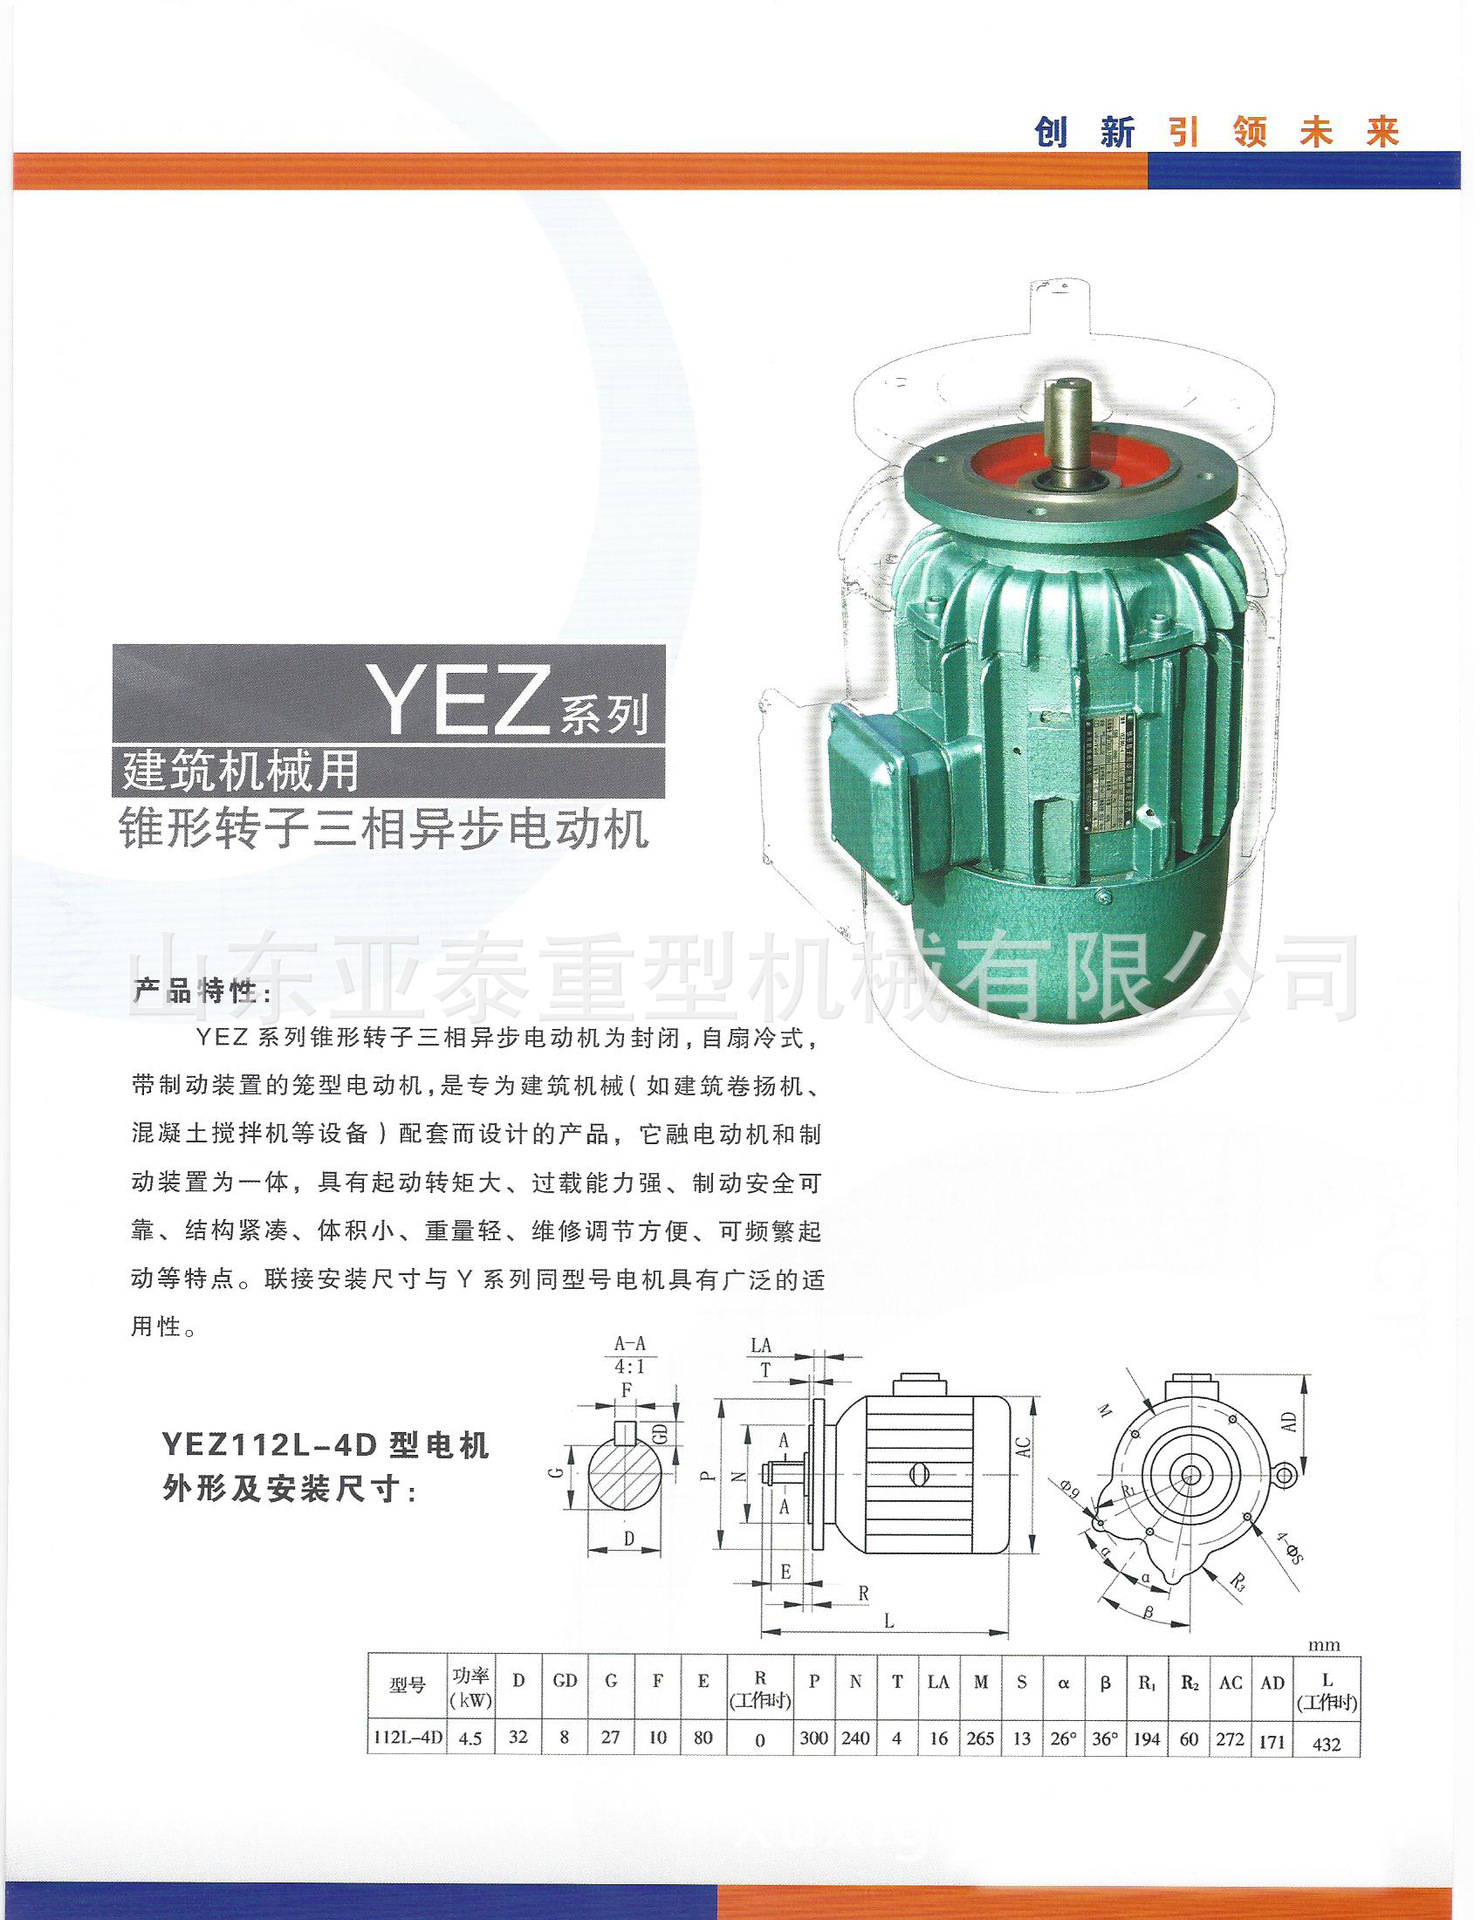 yez锥形转子制动异步电动机外形与安装尺寸